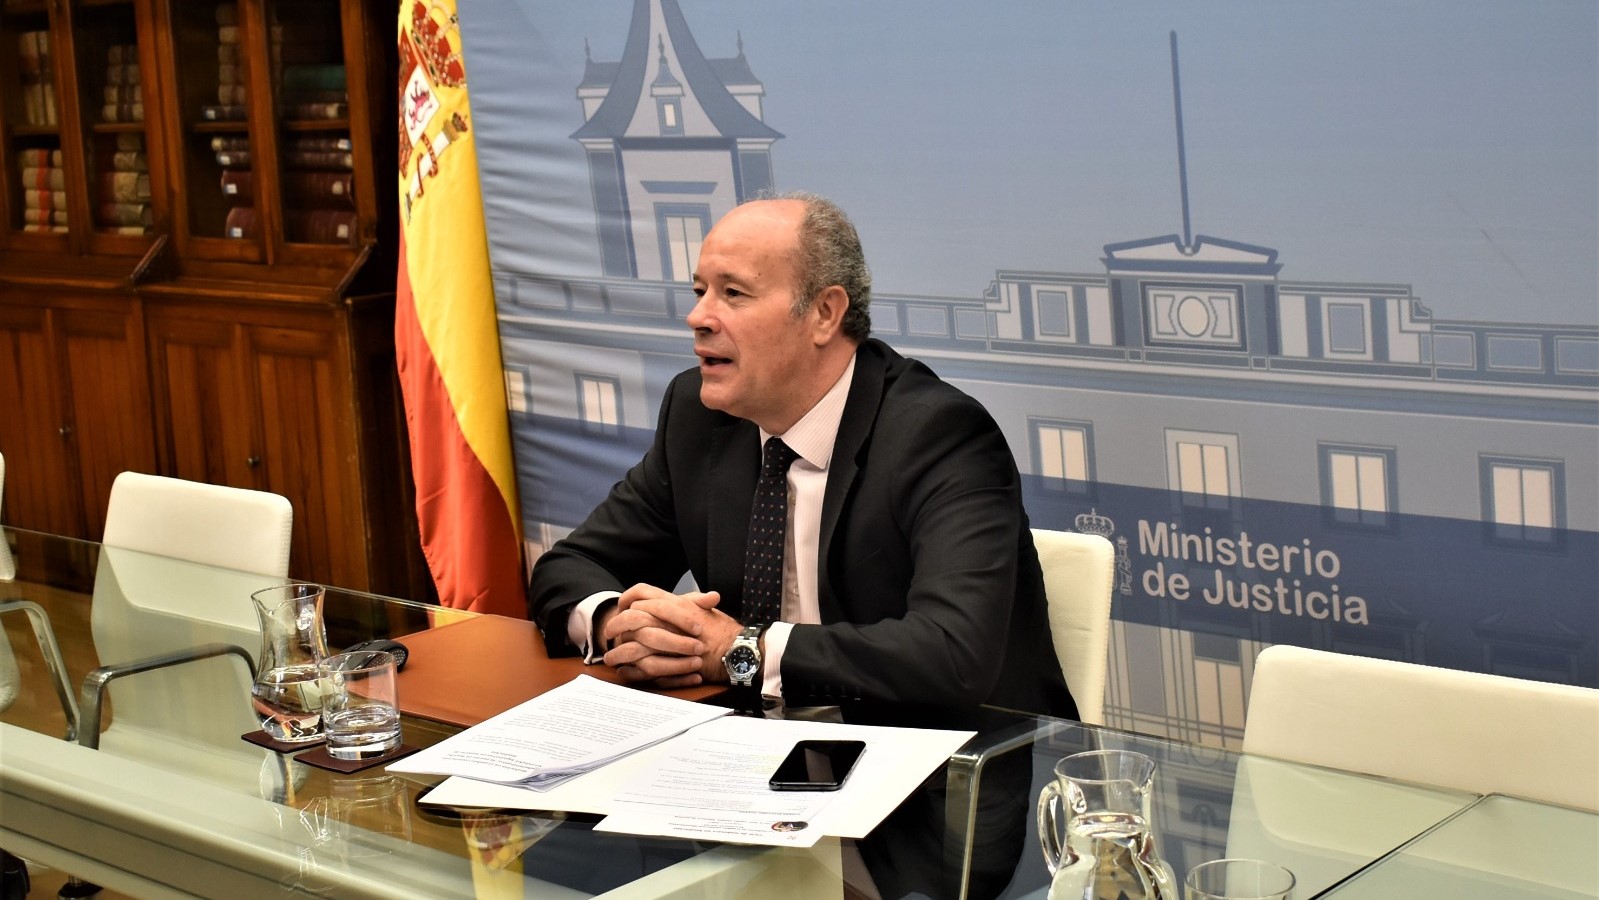 El ministro de Justicia, Juan Carlos Campo, durante su intervenci&oacute;n por videoconferencia en el Foro sobre mediaci&oacute;n organizado por la C&aacute;mara de Comercio de Valladolid